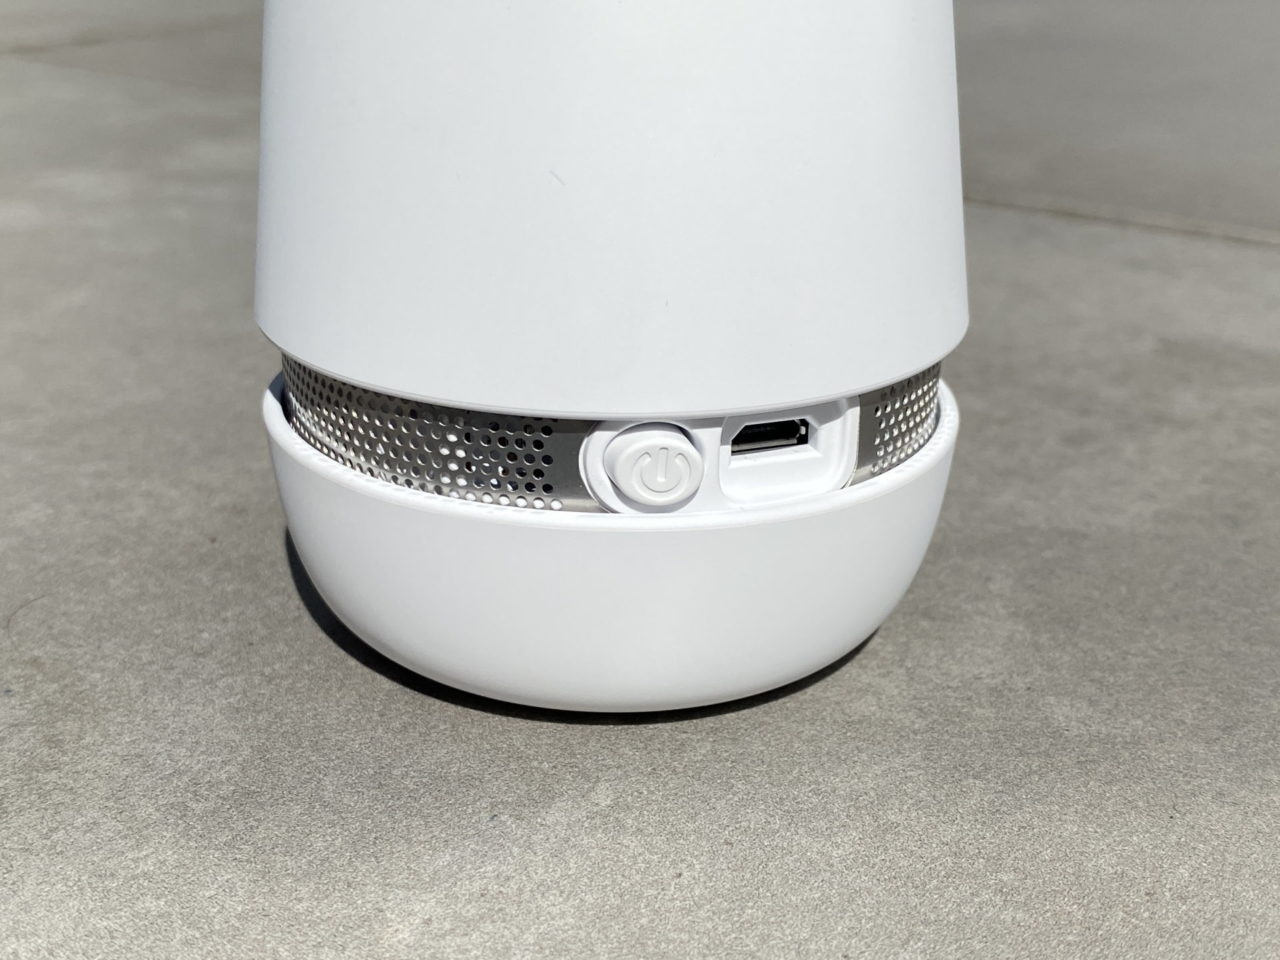 Bosch-spexor-Lautsprecherleiste-mit-Schalter-und-USB-Port.jpg